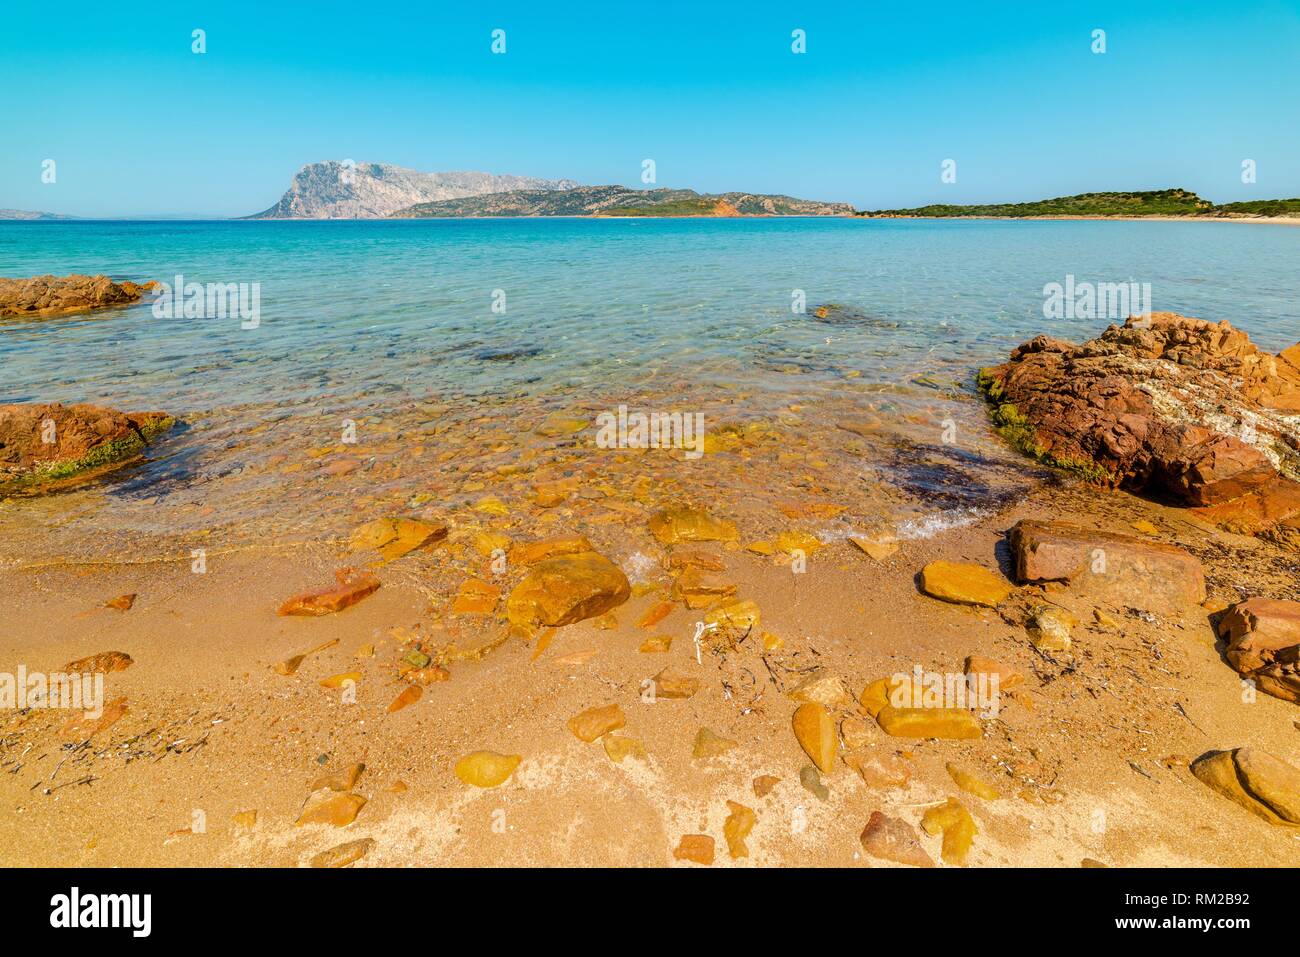 Clear water in Capo Coda Cavallo beach, Sardinia, Italy Stock Photo